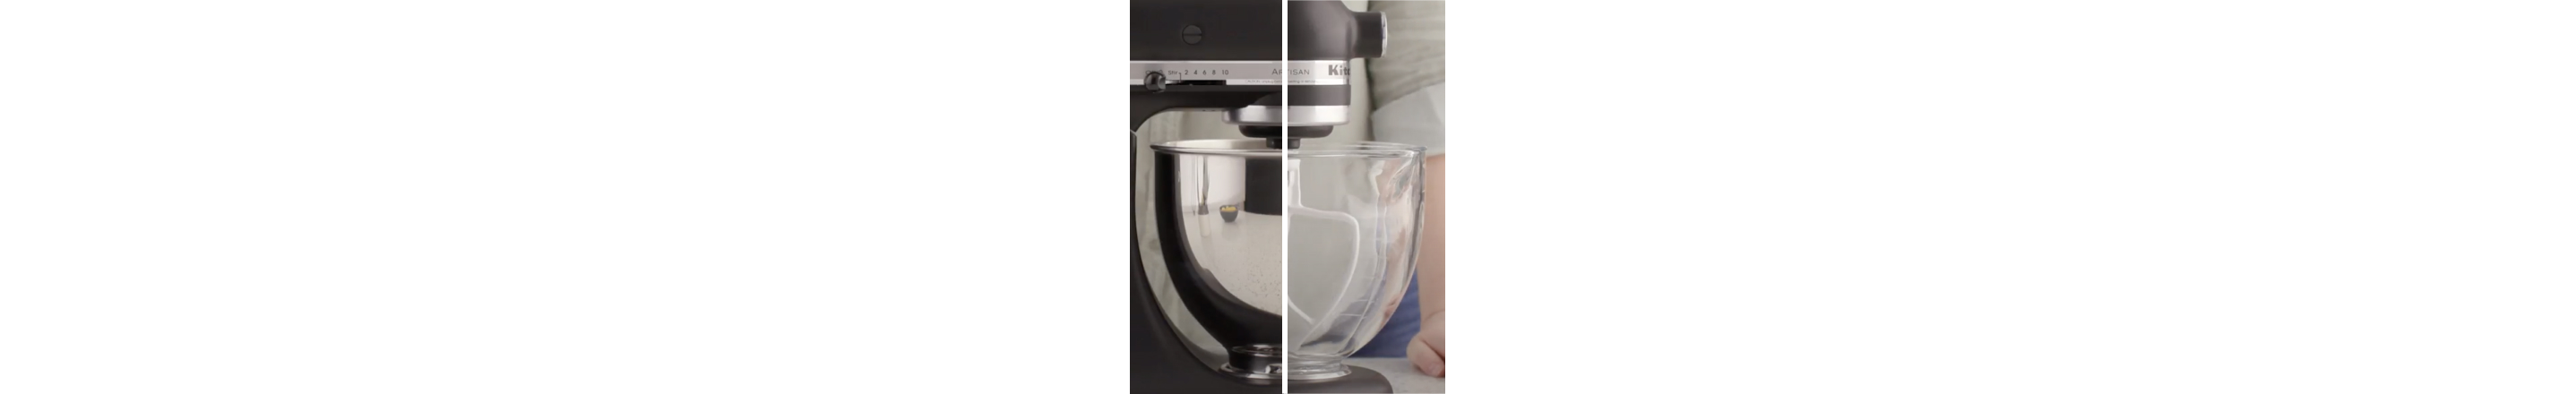 Artisan® Design Series 5 Quart Tilt-Head Stand Mixer with Glass Bowl